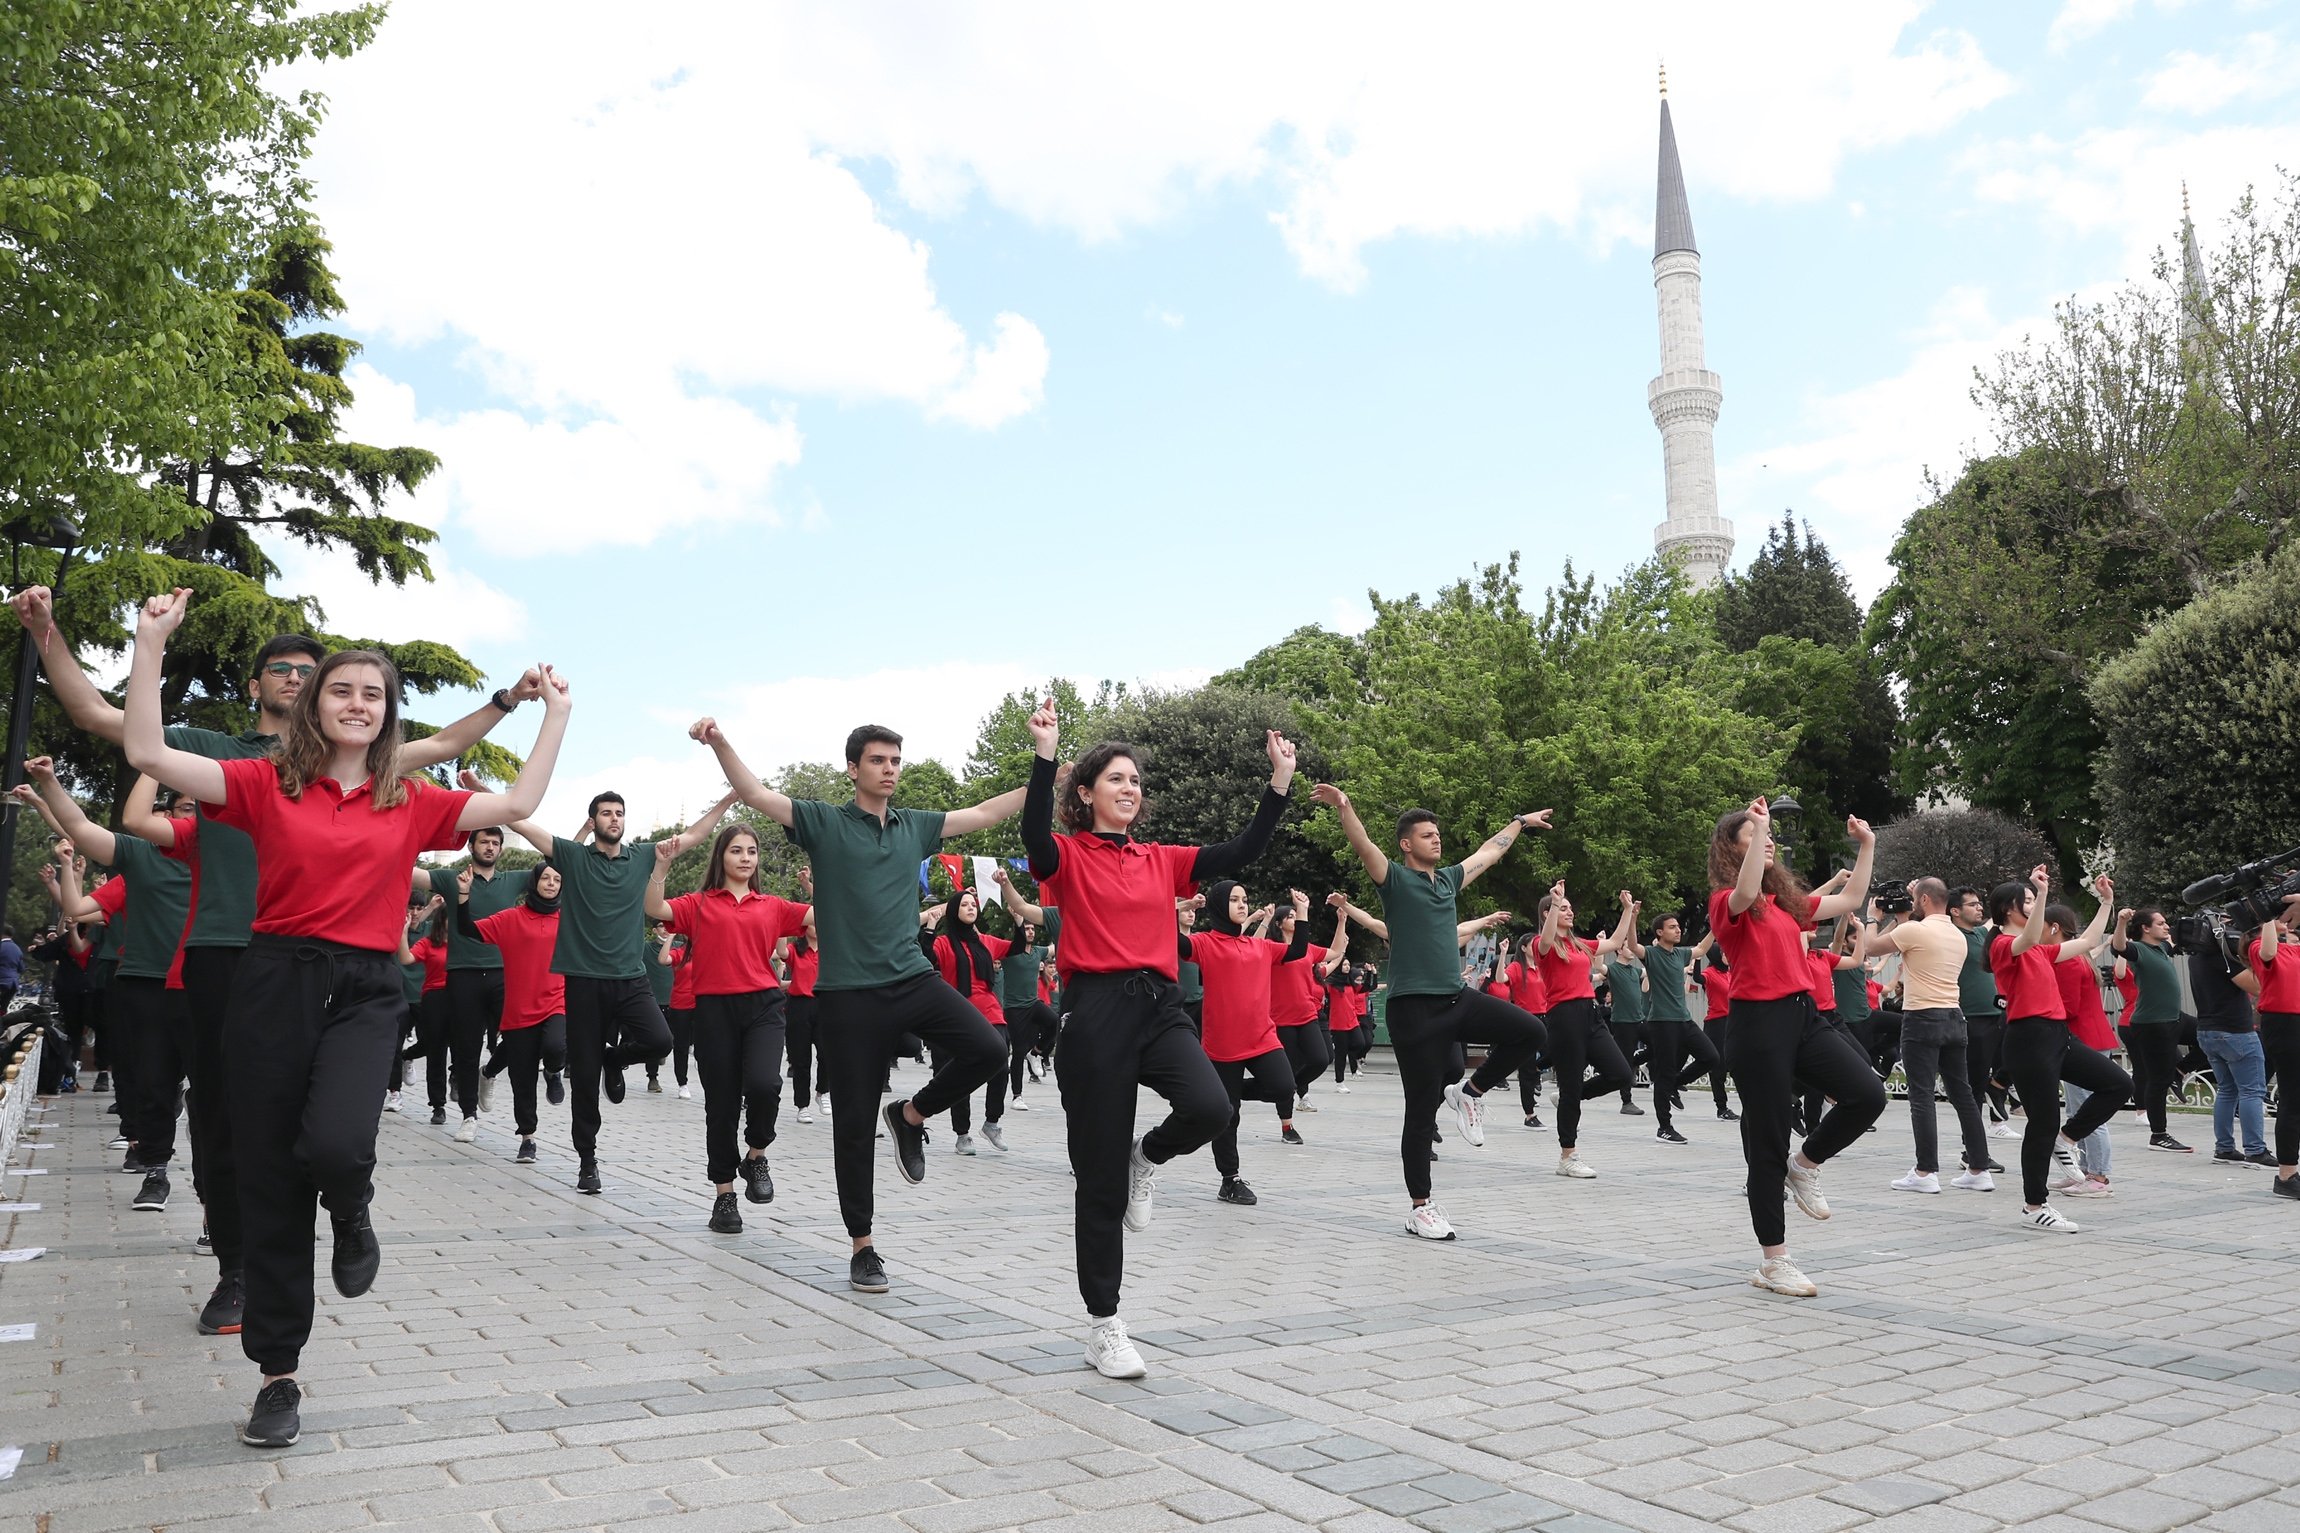 Turkish holiday celebrates youth, sports and Atatürk’s legacy